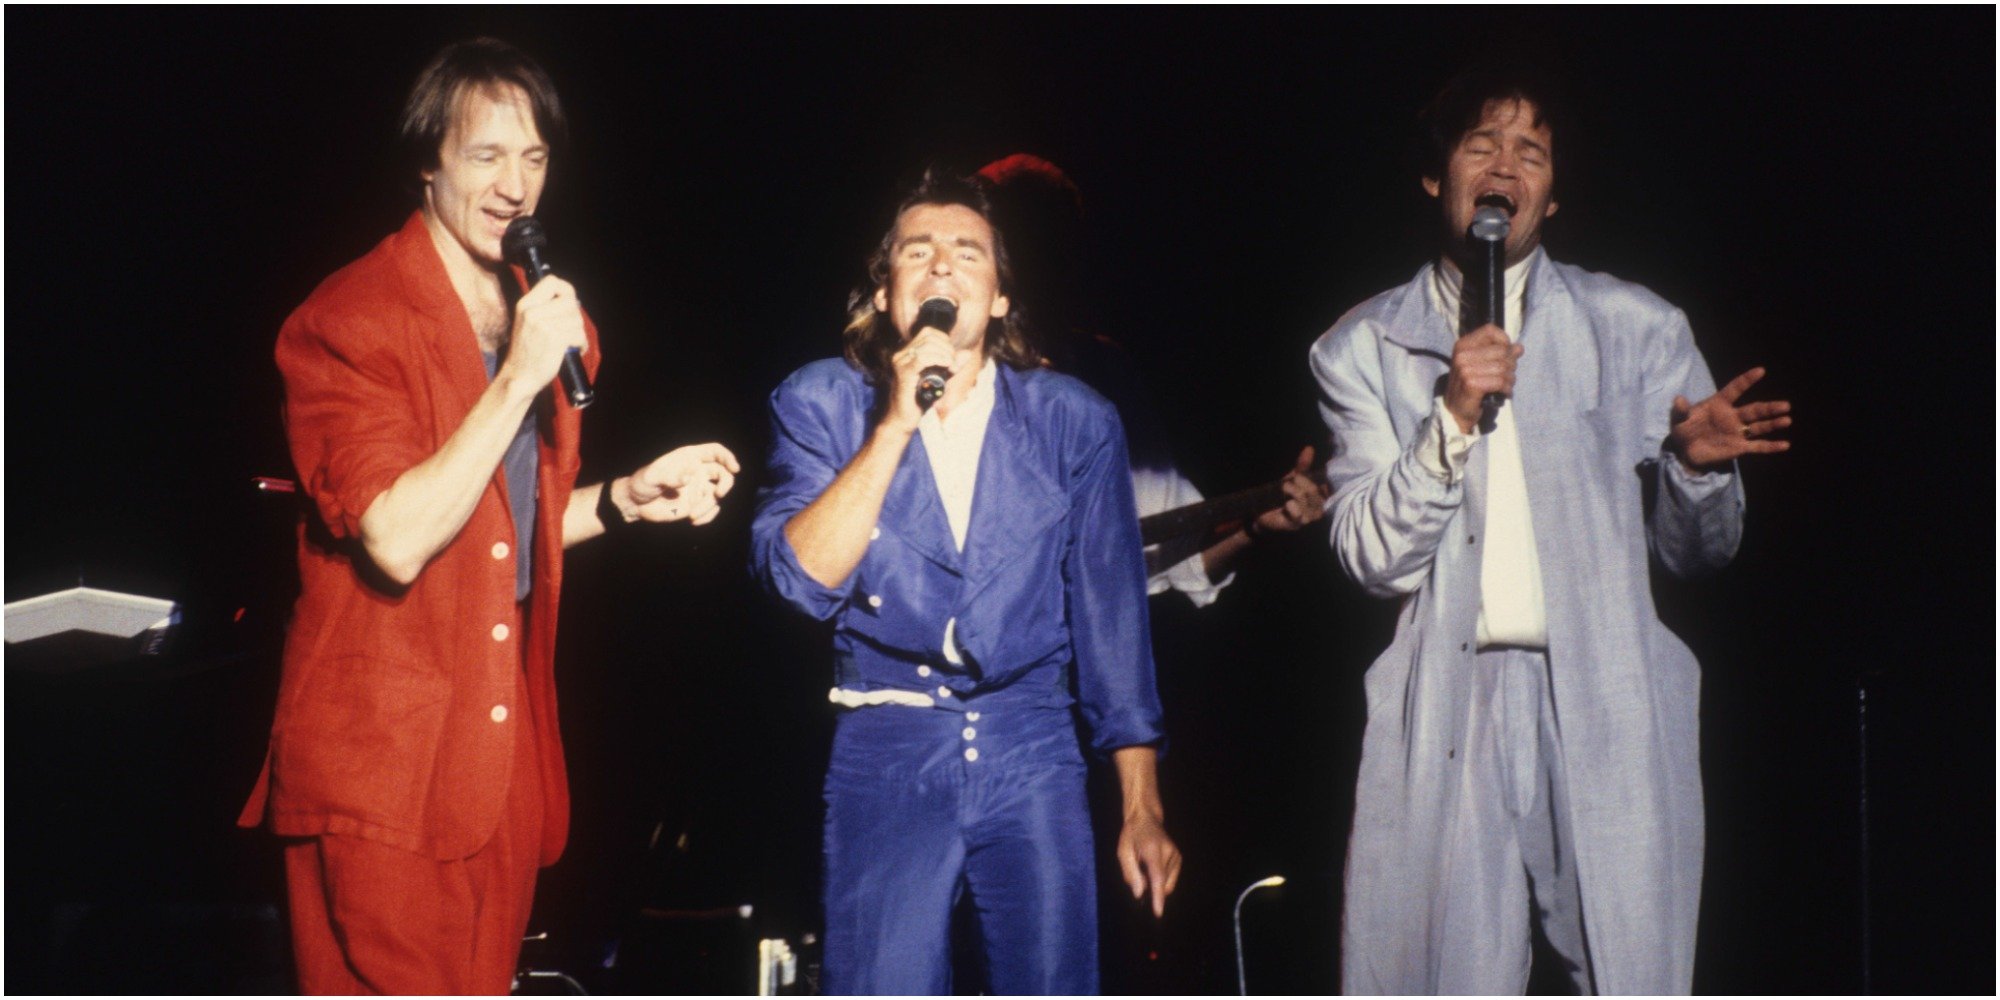 The Monkees reunion tour 1986.